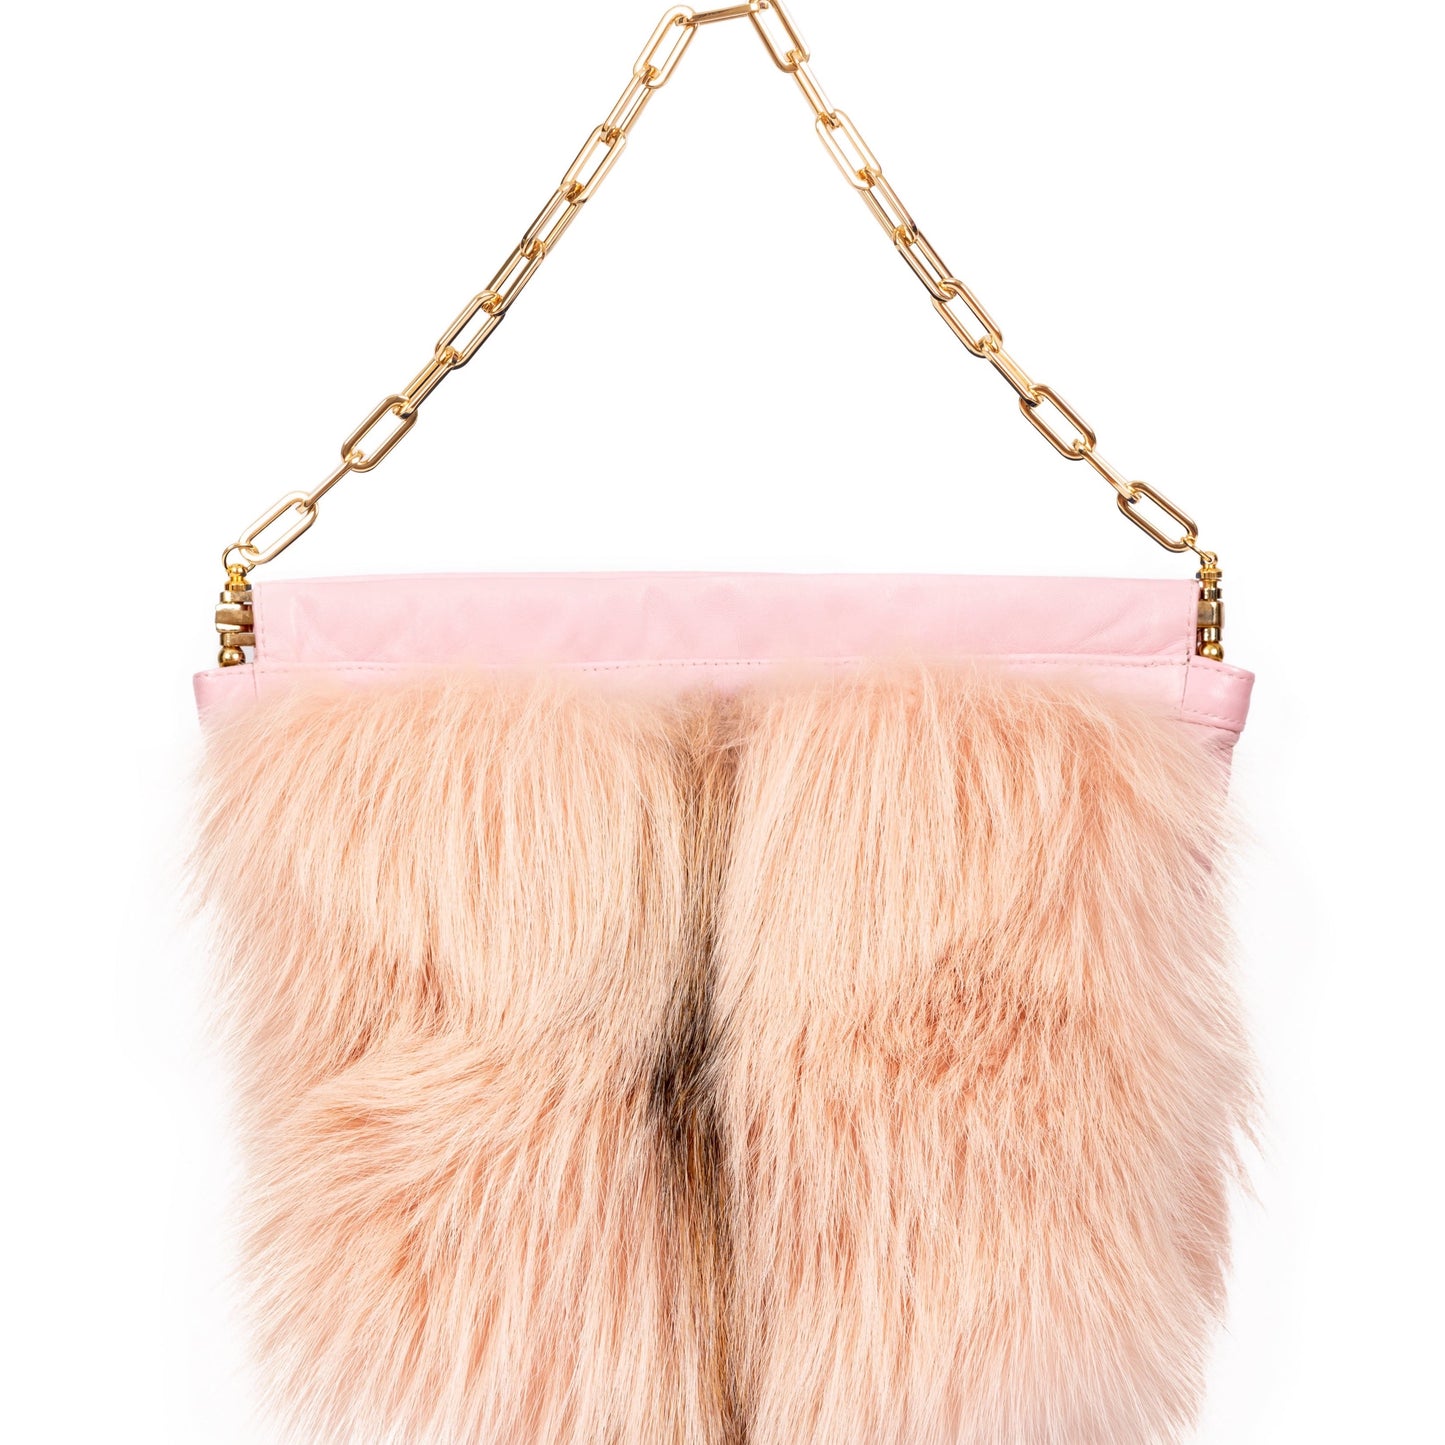 Paulita- Dyed Pink Fox Bag